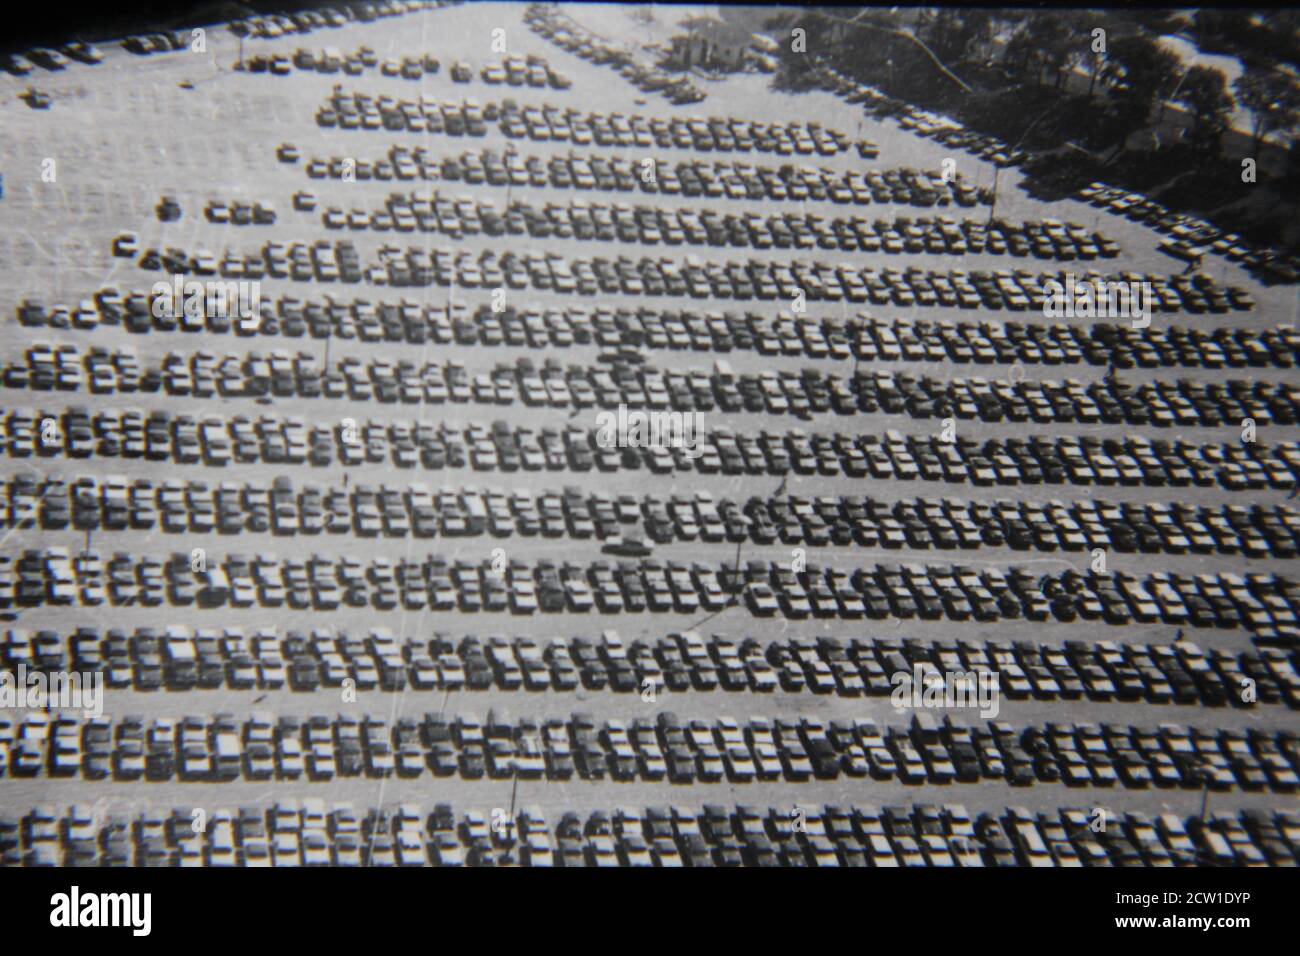 Feine 70er Jahre Vintage schwarz-weiß Fotografie von einem Luftbild von einem Parkplatz voller Autos. Stockfoto